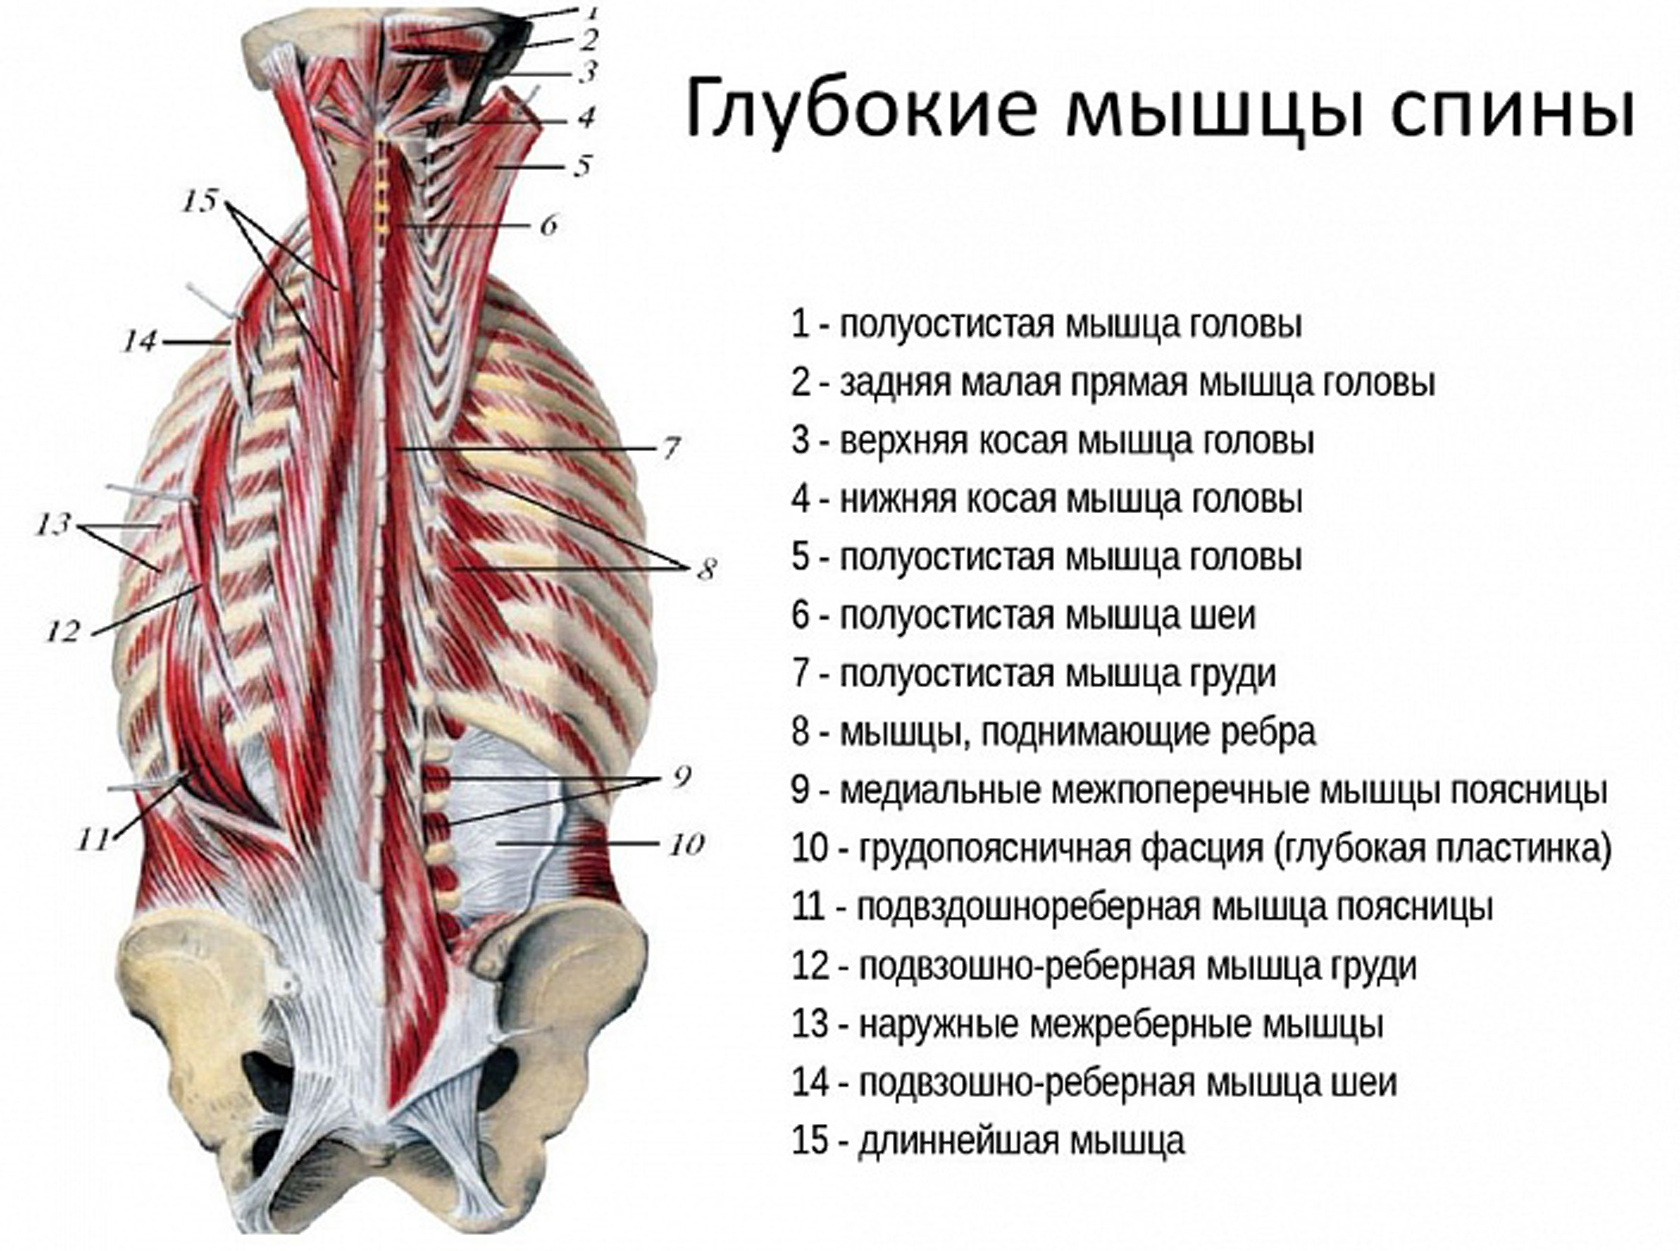 Грудная поясница. Мышцы спины поверхностные и глубокие слои анатомия. Поверхностный слой глубоких мышц спины. Мышцы спины второй глубокий слой.